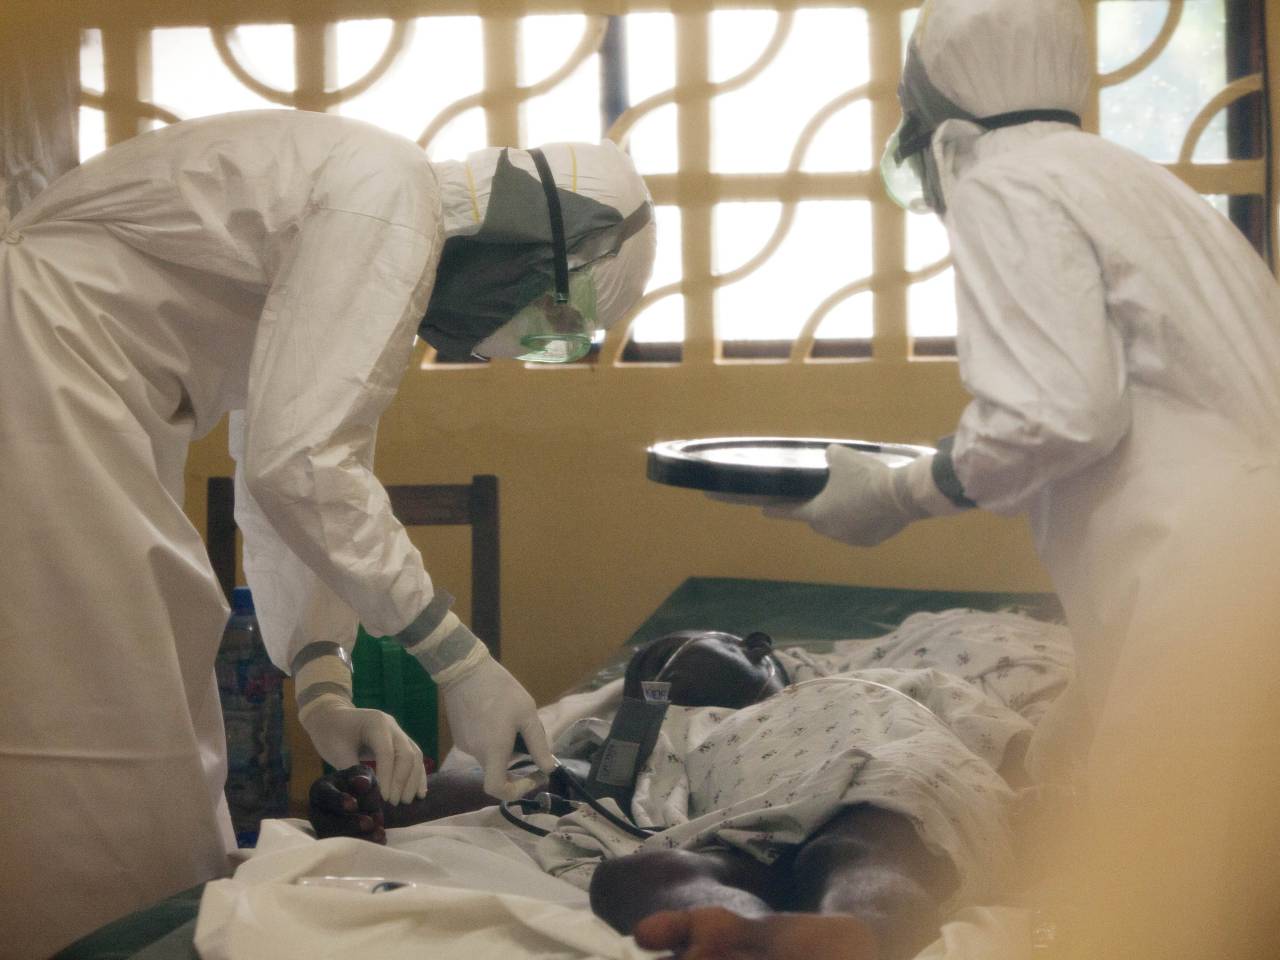 ΠΟΥ: καμπανάκι κινδύνου για βασικές ελλείψεις στις χώρες που πλήττονται από τον Ebola